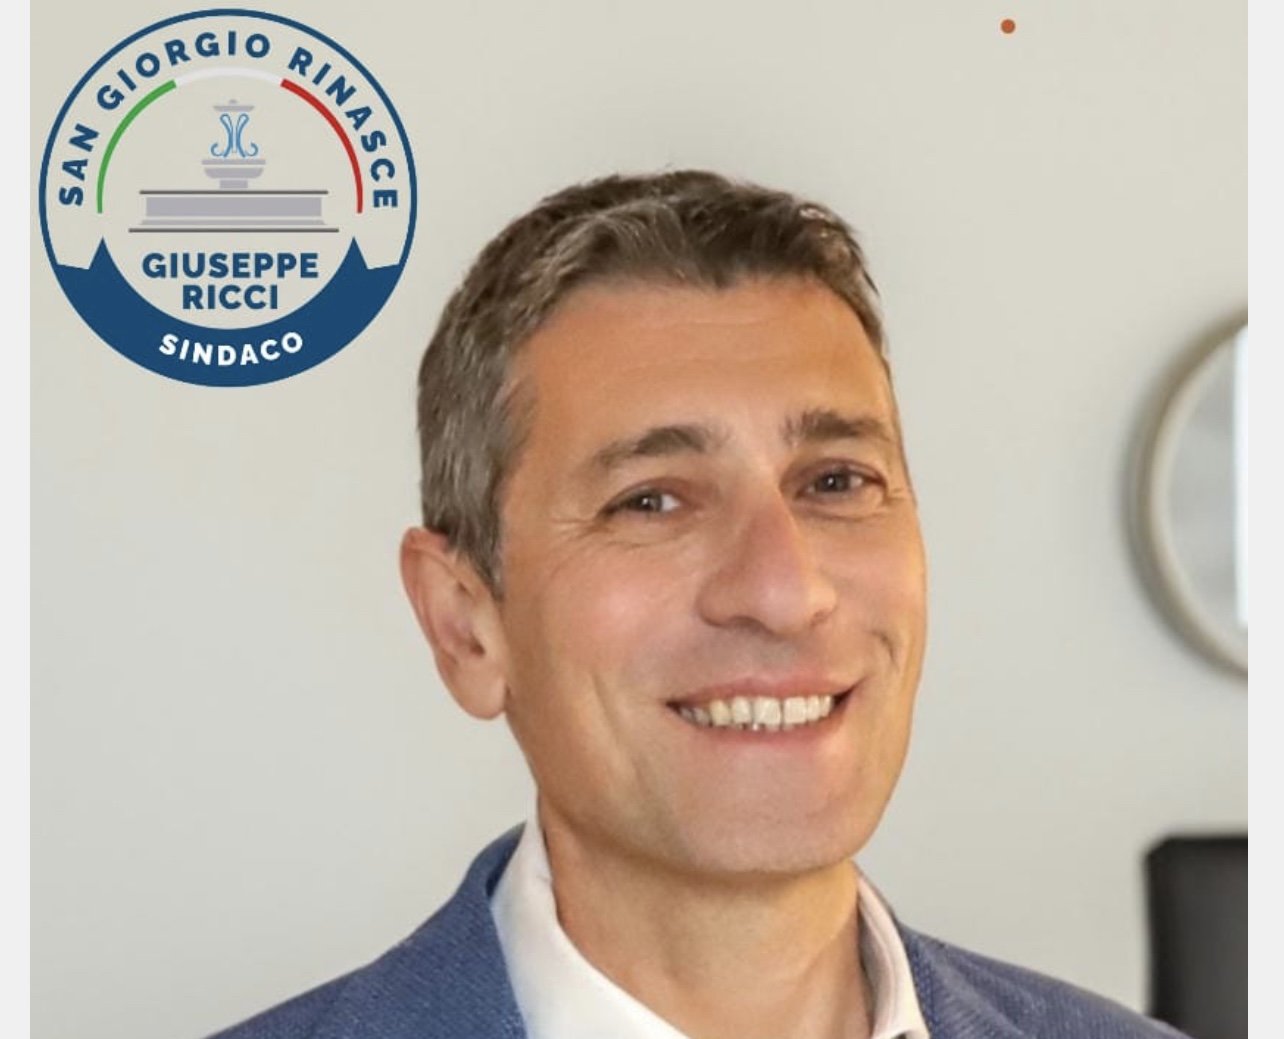 E’ufficiale: Giuseppe Ricci candidato sindaco a San Giorgio del Sannio